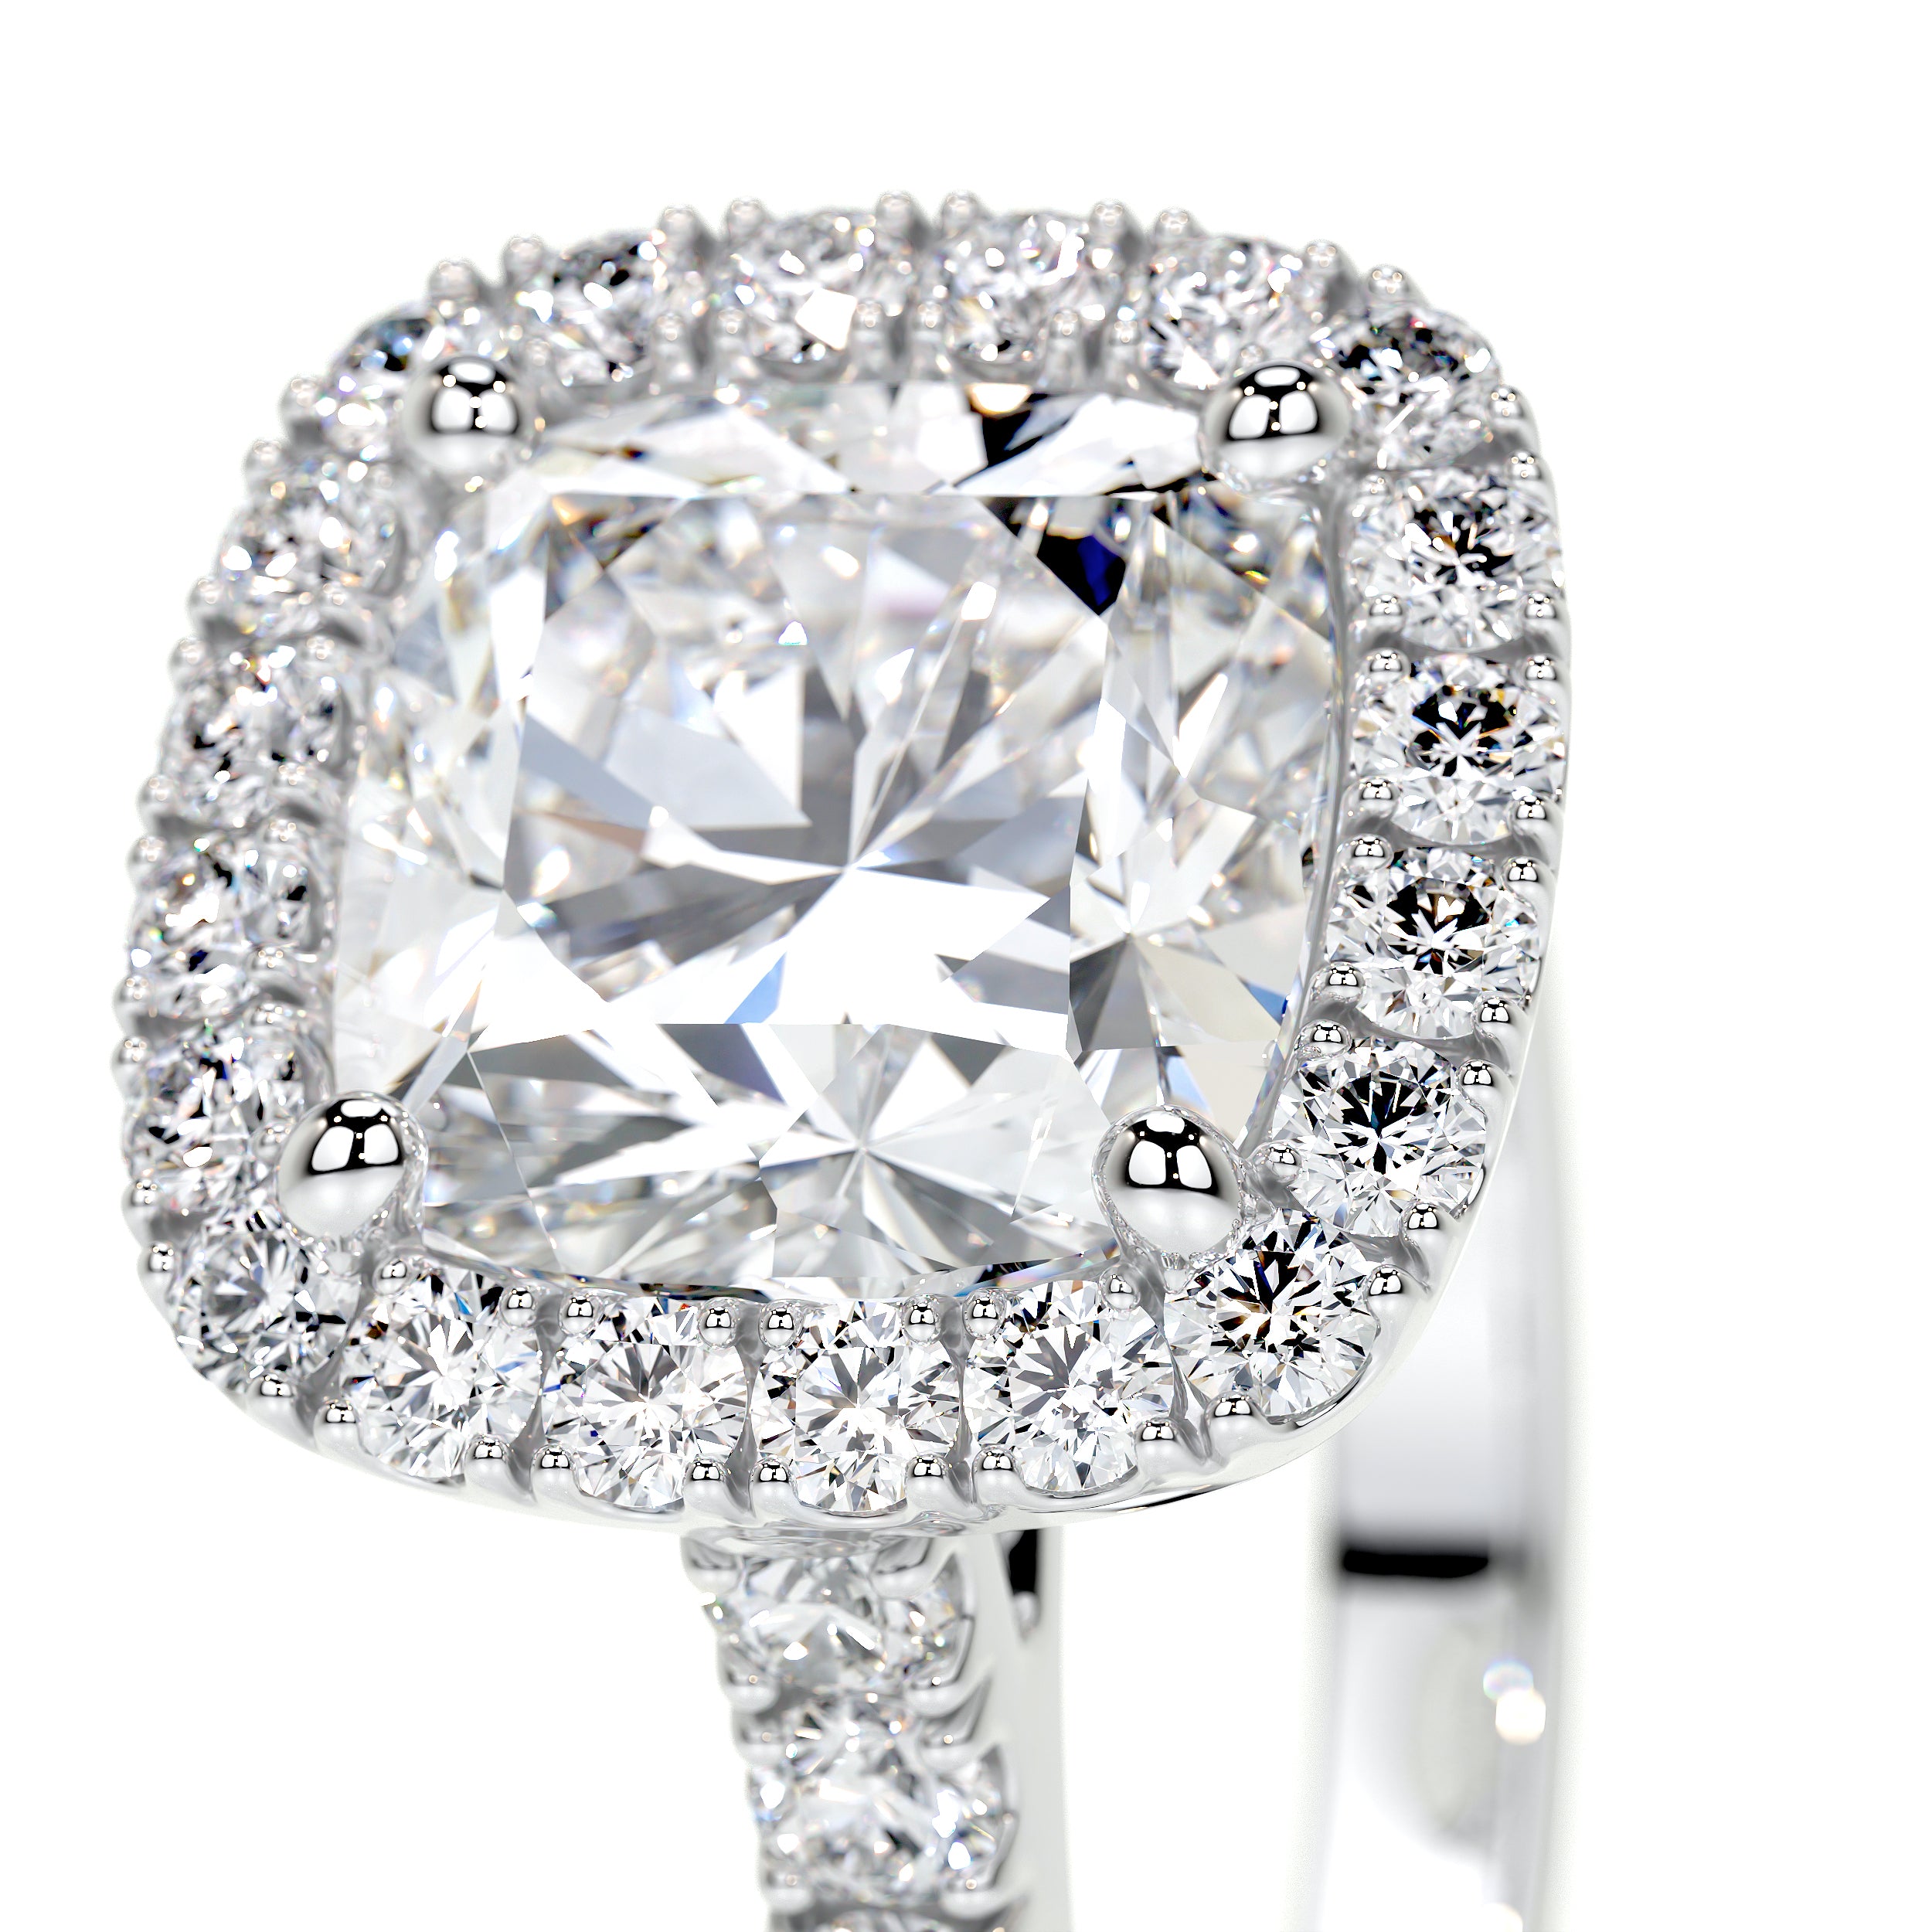 Celeste Lab Grown Diamond Ring -14K White Gold